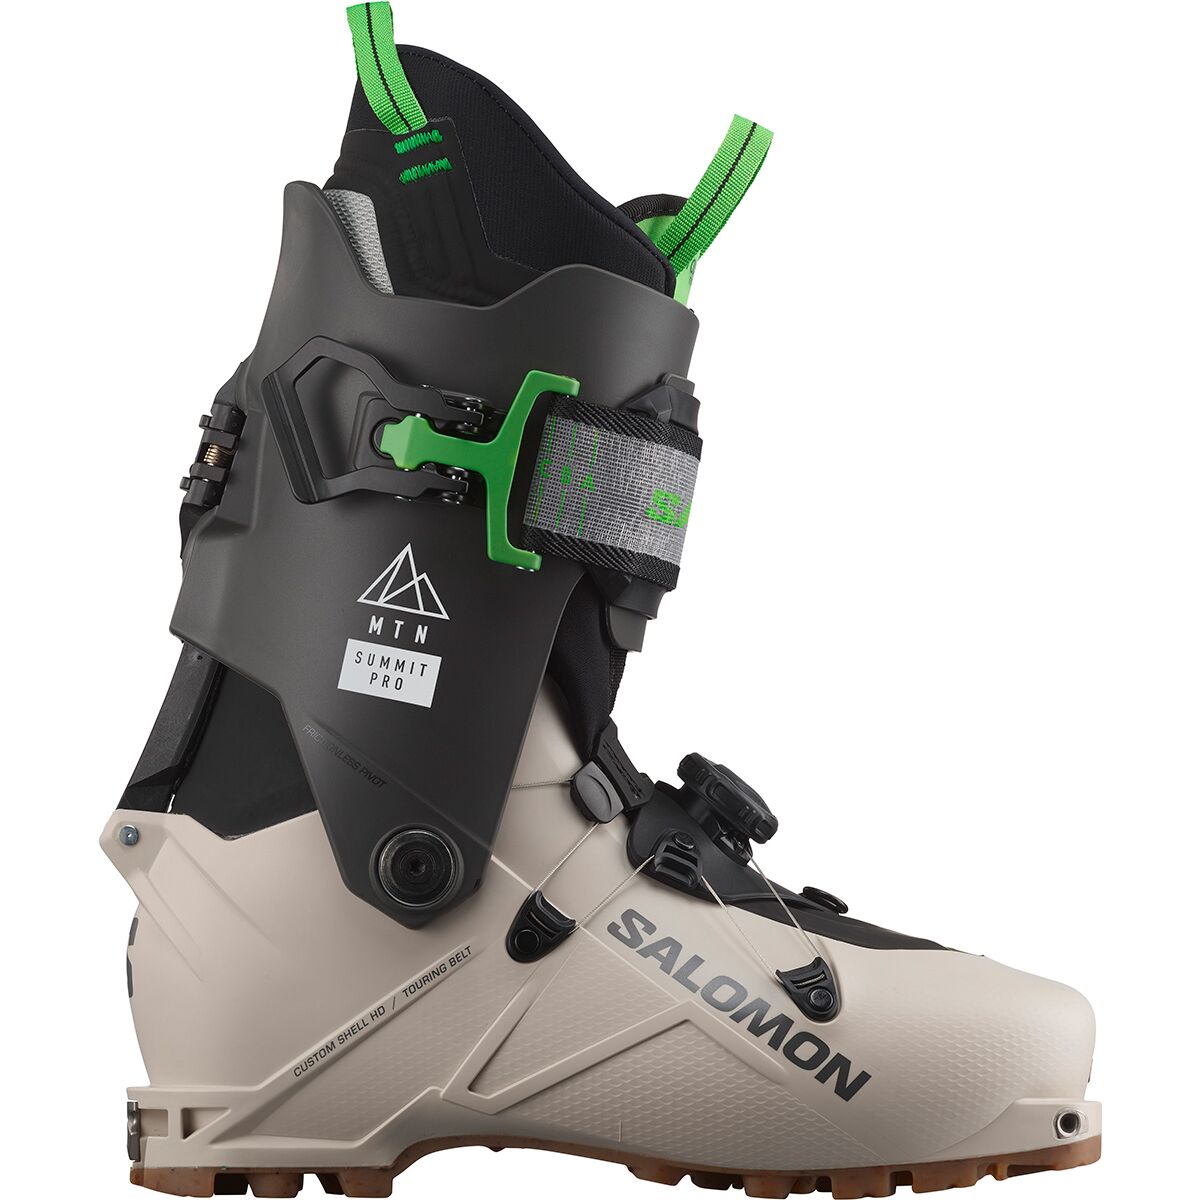 Salomon MTN Summit Pro Touring Boots - 2023